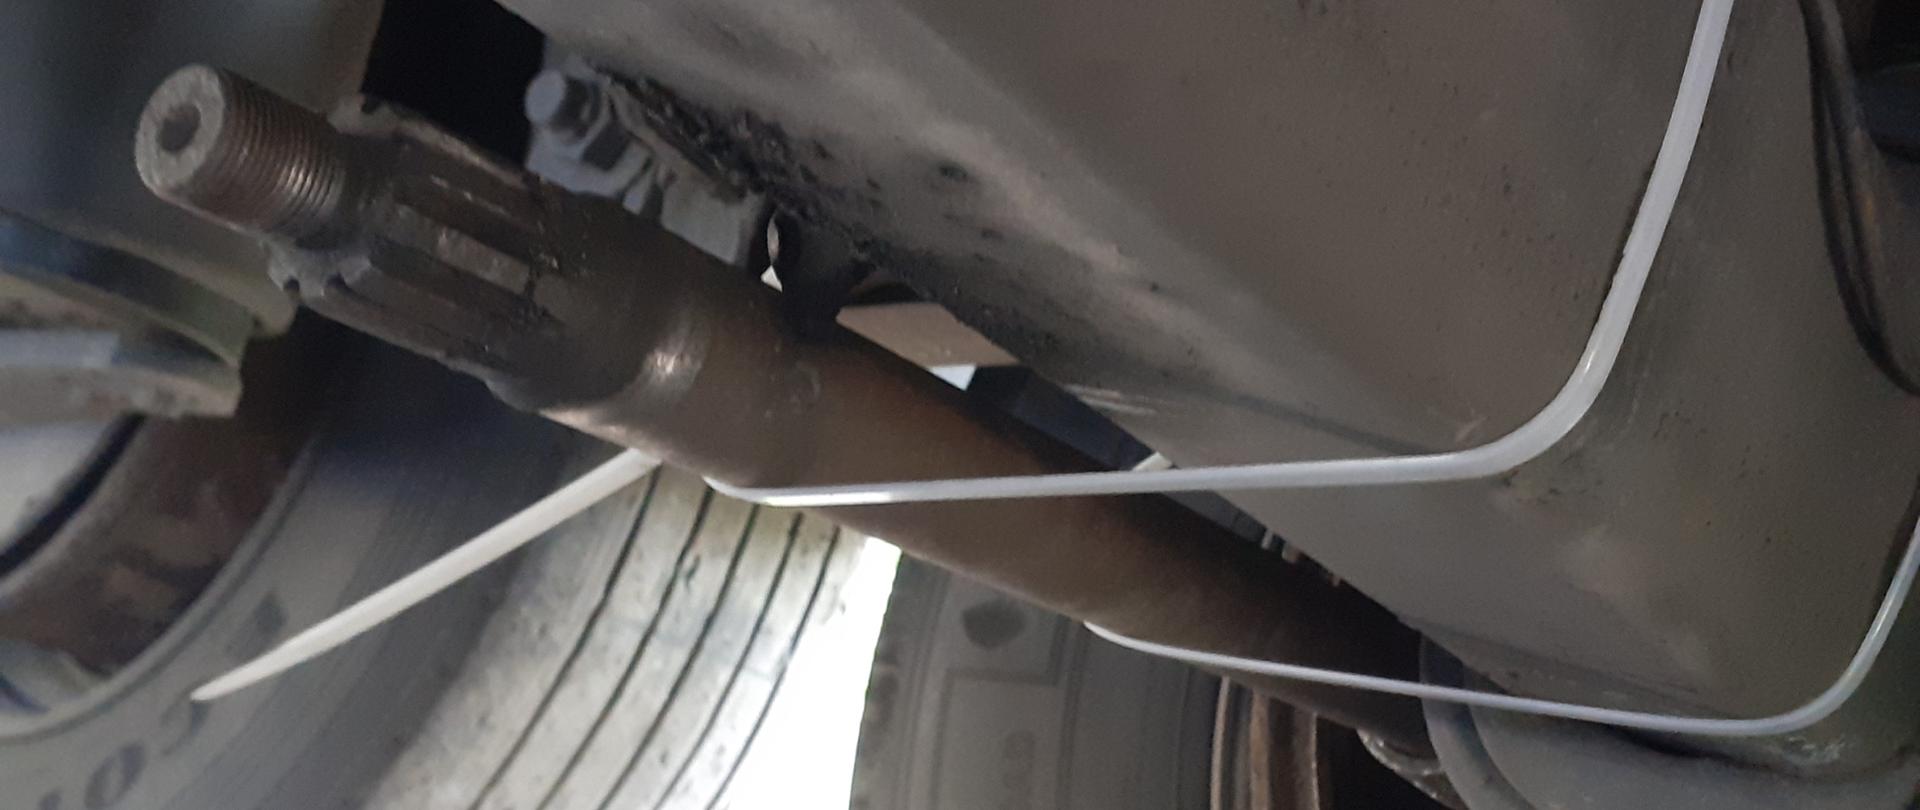 Odłączony przewód układu pneumatycznego od siłownika hamulcowego przy jednym z kół naczepy ciężarowej.